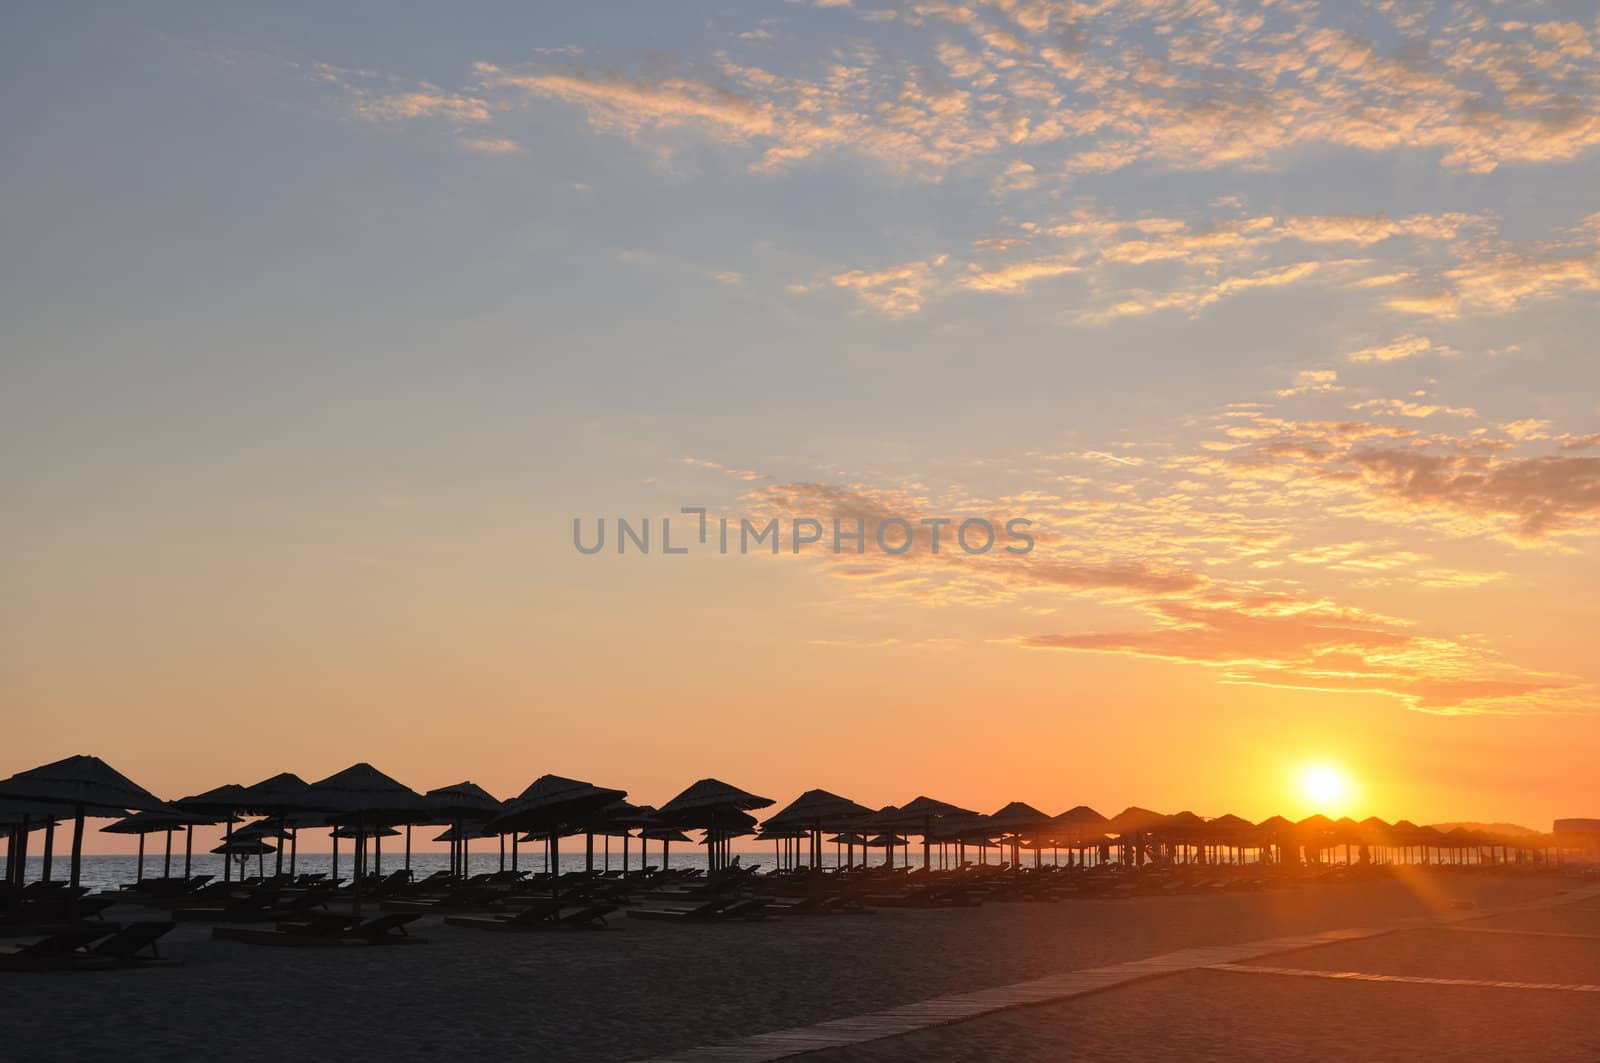 Umbrella on sandy sea beach at sunset stock photo